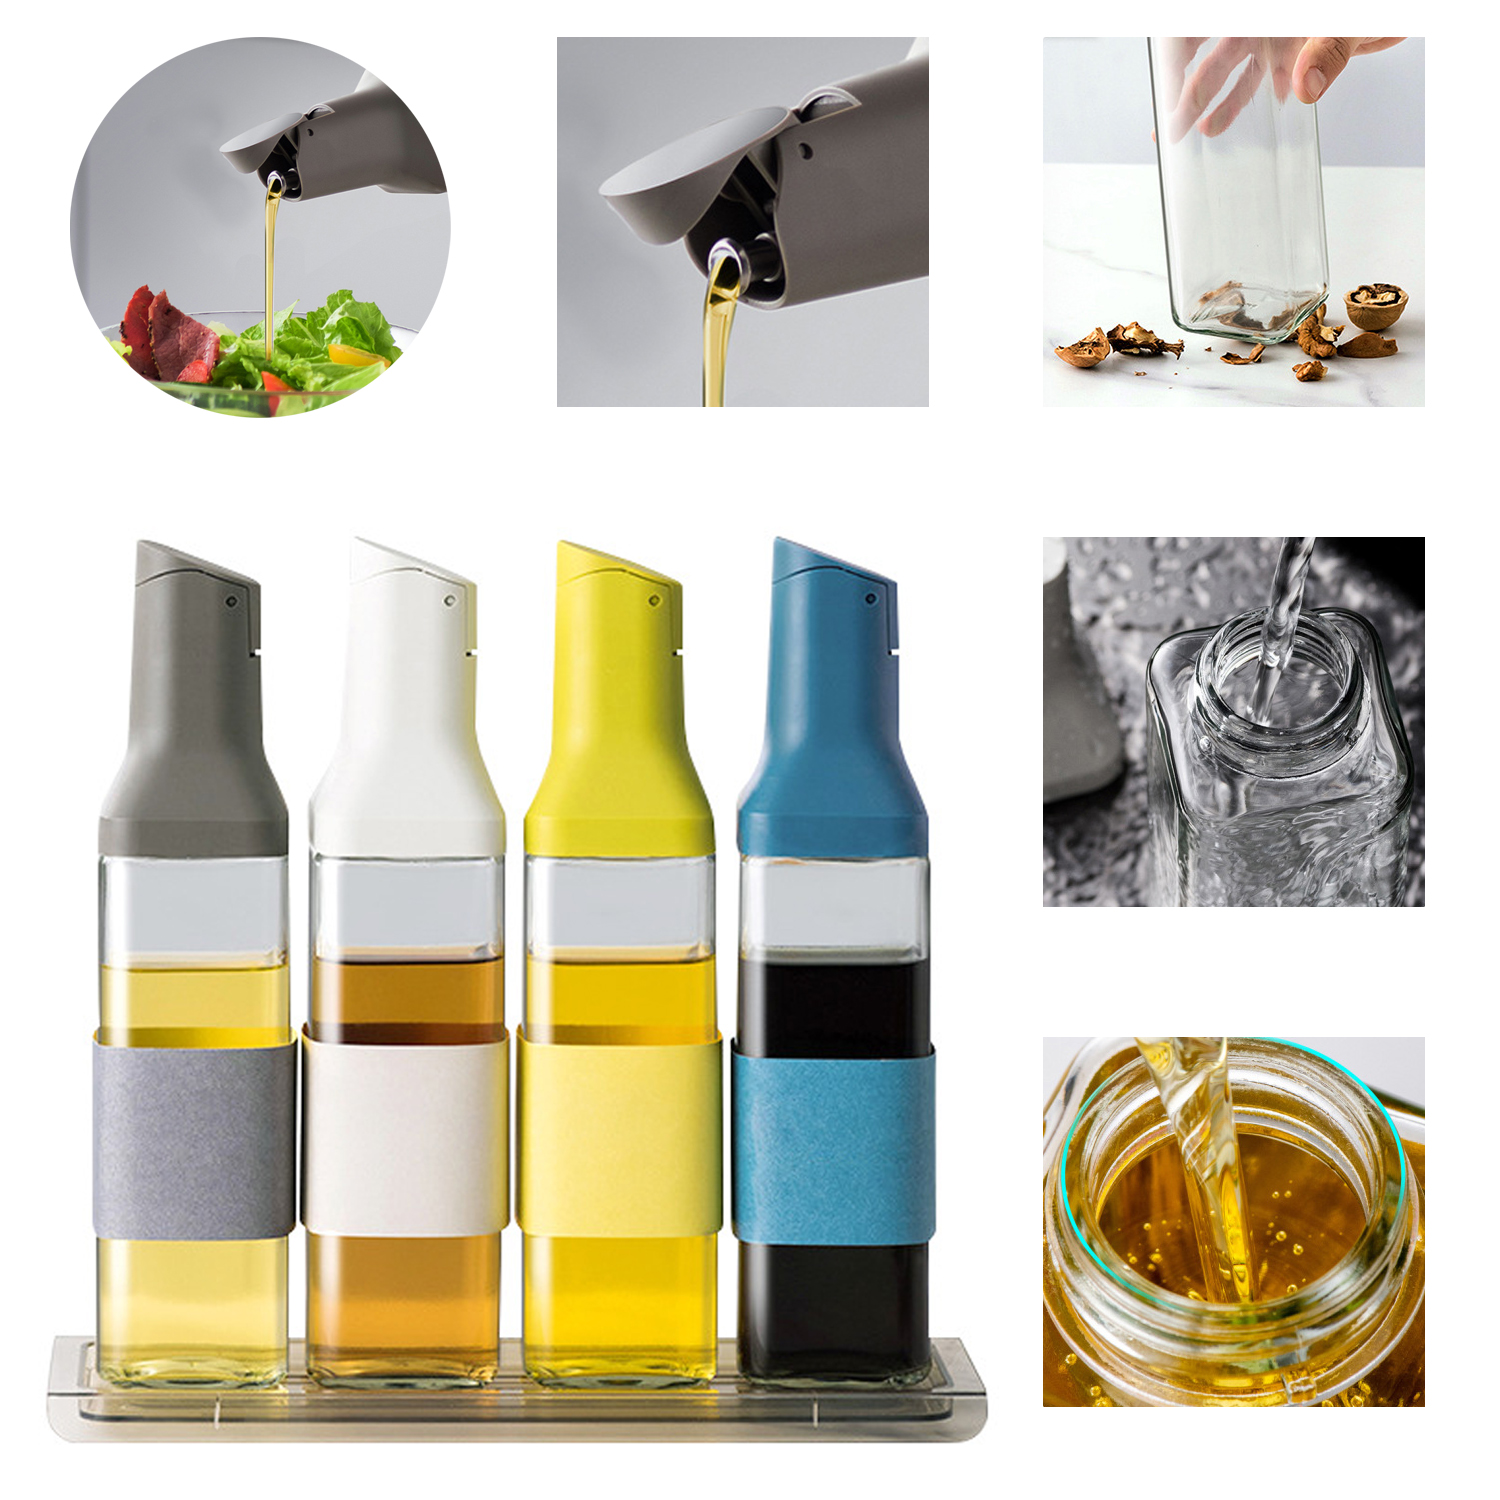 Botella dispensadora de aceite de oliva grande, contenedor de vidrio para condimentos con tapa automática, a prueba de fugas, dispensadores de vinagre de aceite antiadherente, utensilio de cocina